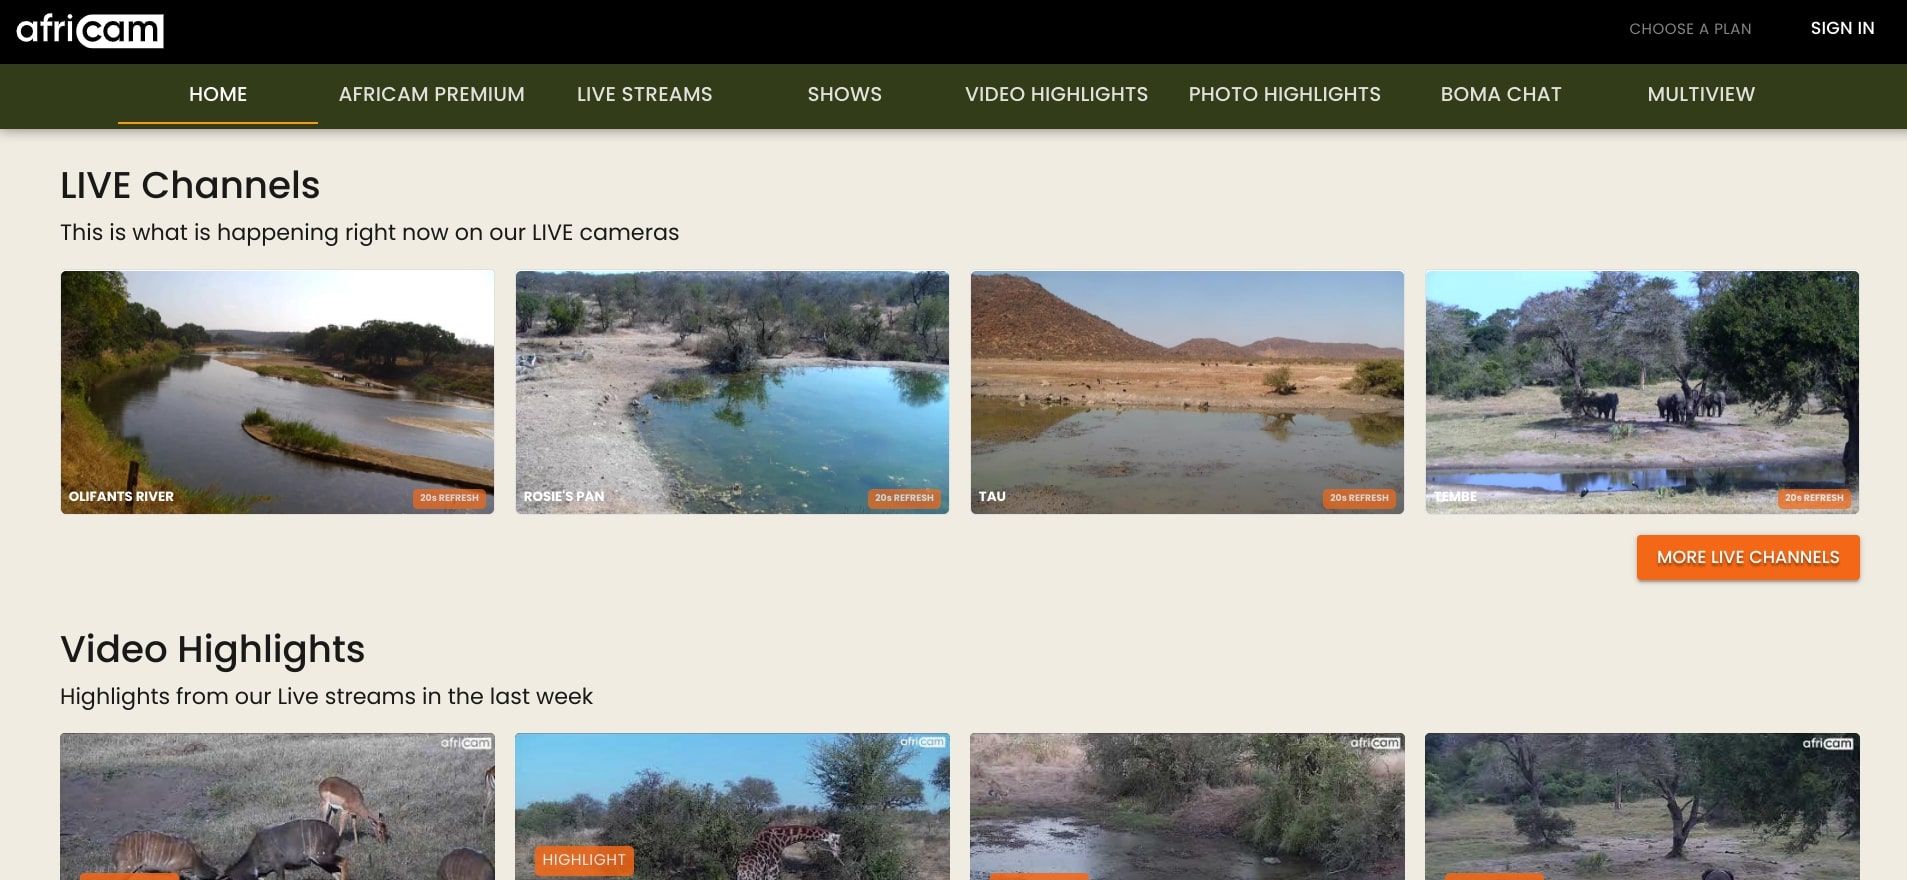 africam website screenshot